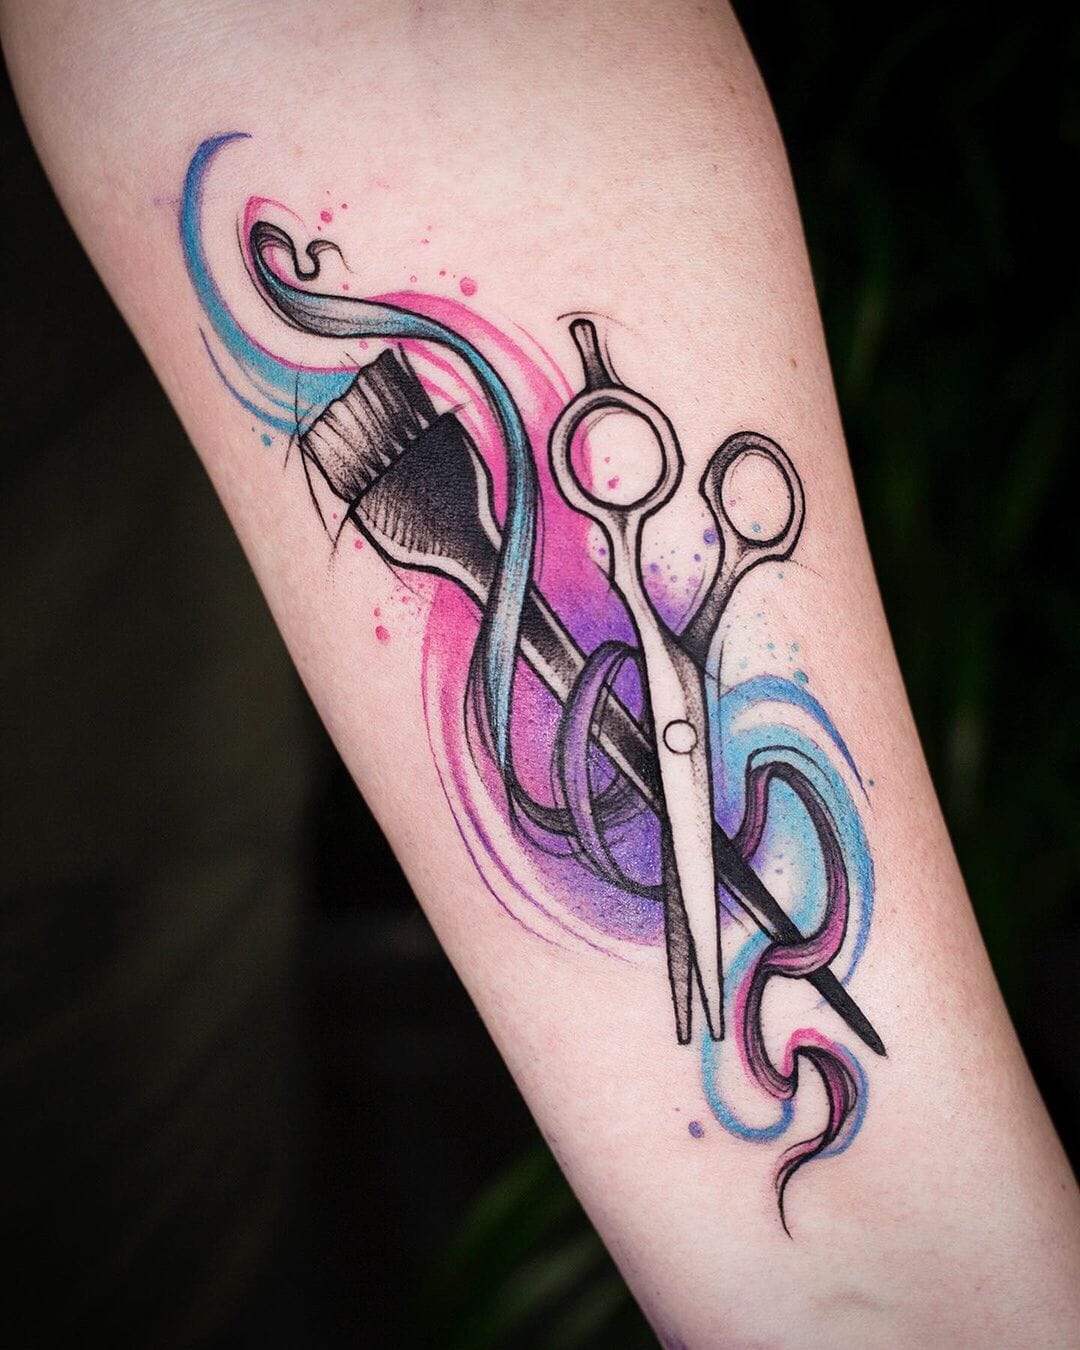 Scissor tattoo | Niku Arbabi | Flickr